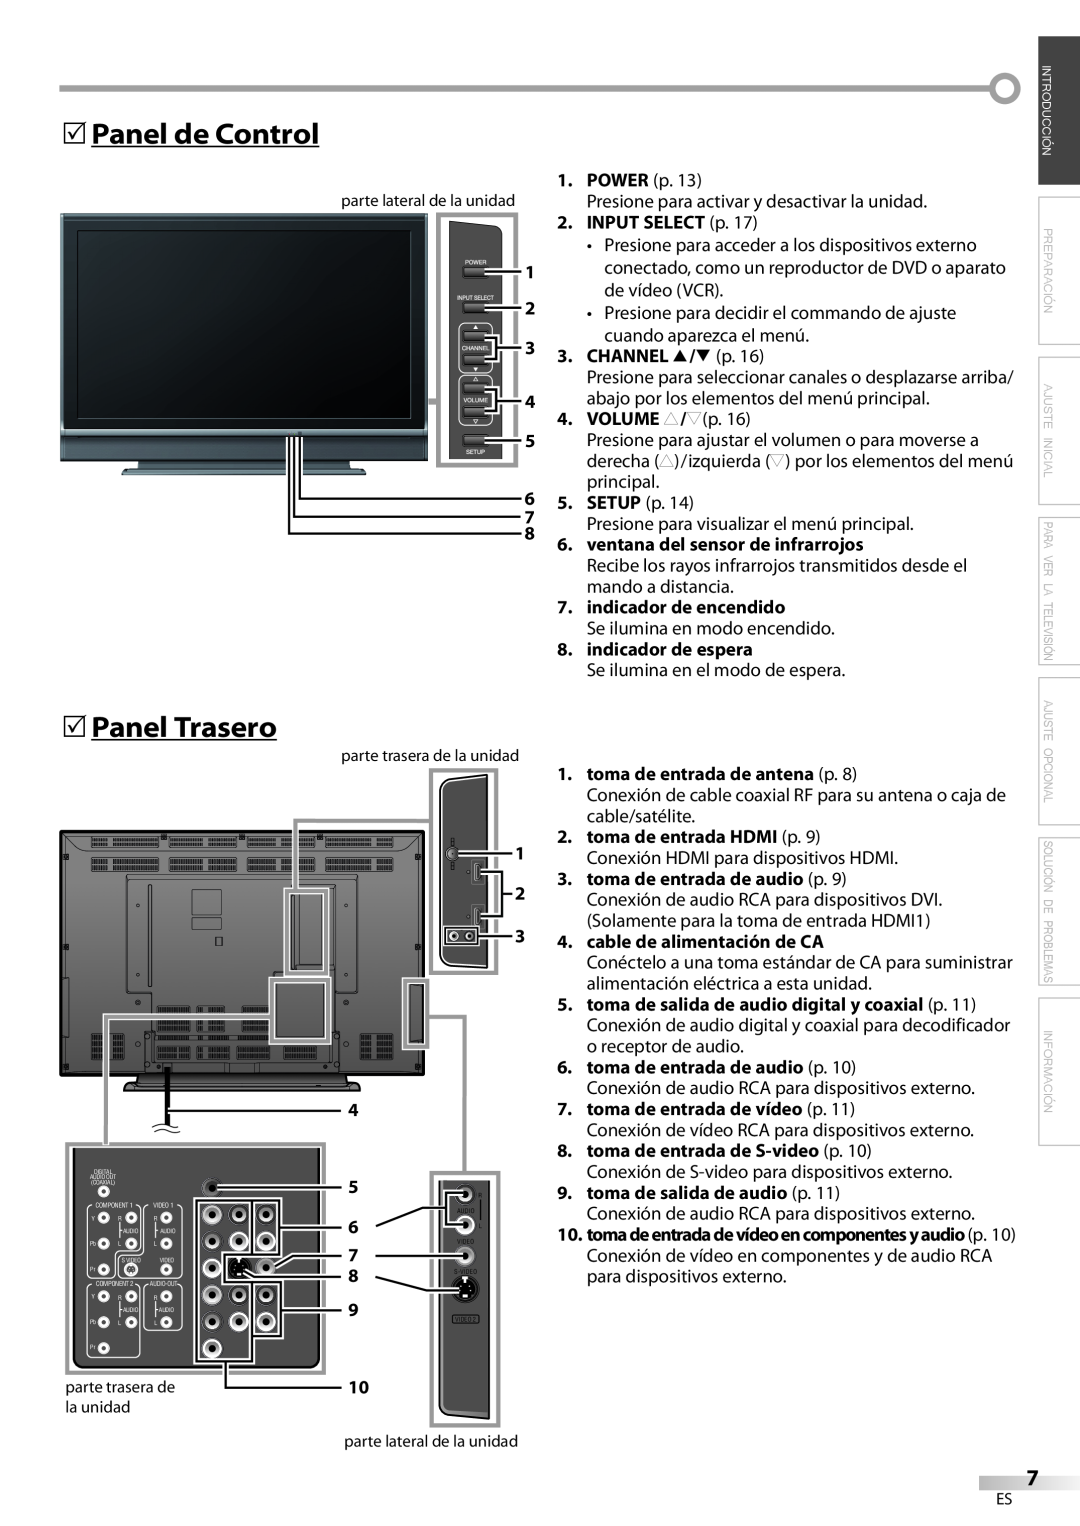 Emerson LC420EM8 5Panel de Control, 5Panel Trasero, Solamente para la toma de entrada HDMI1, cable de alimentación de CA 